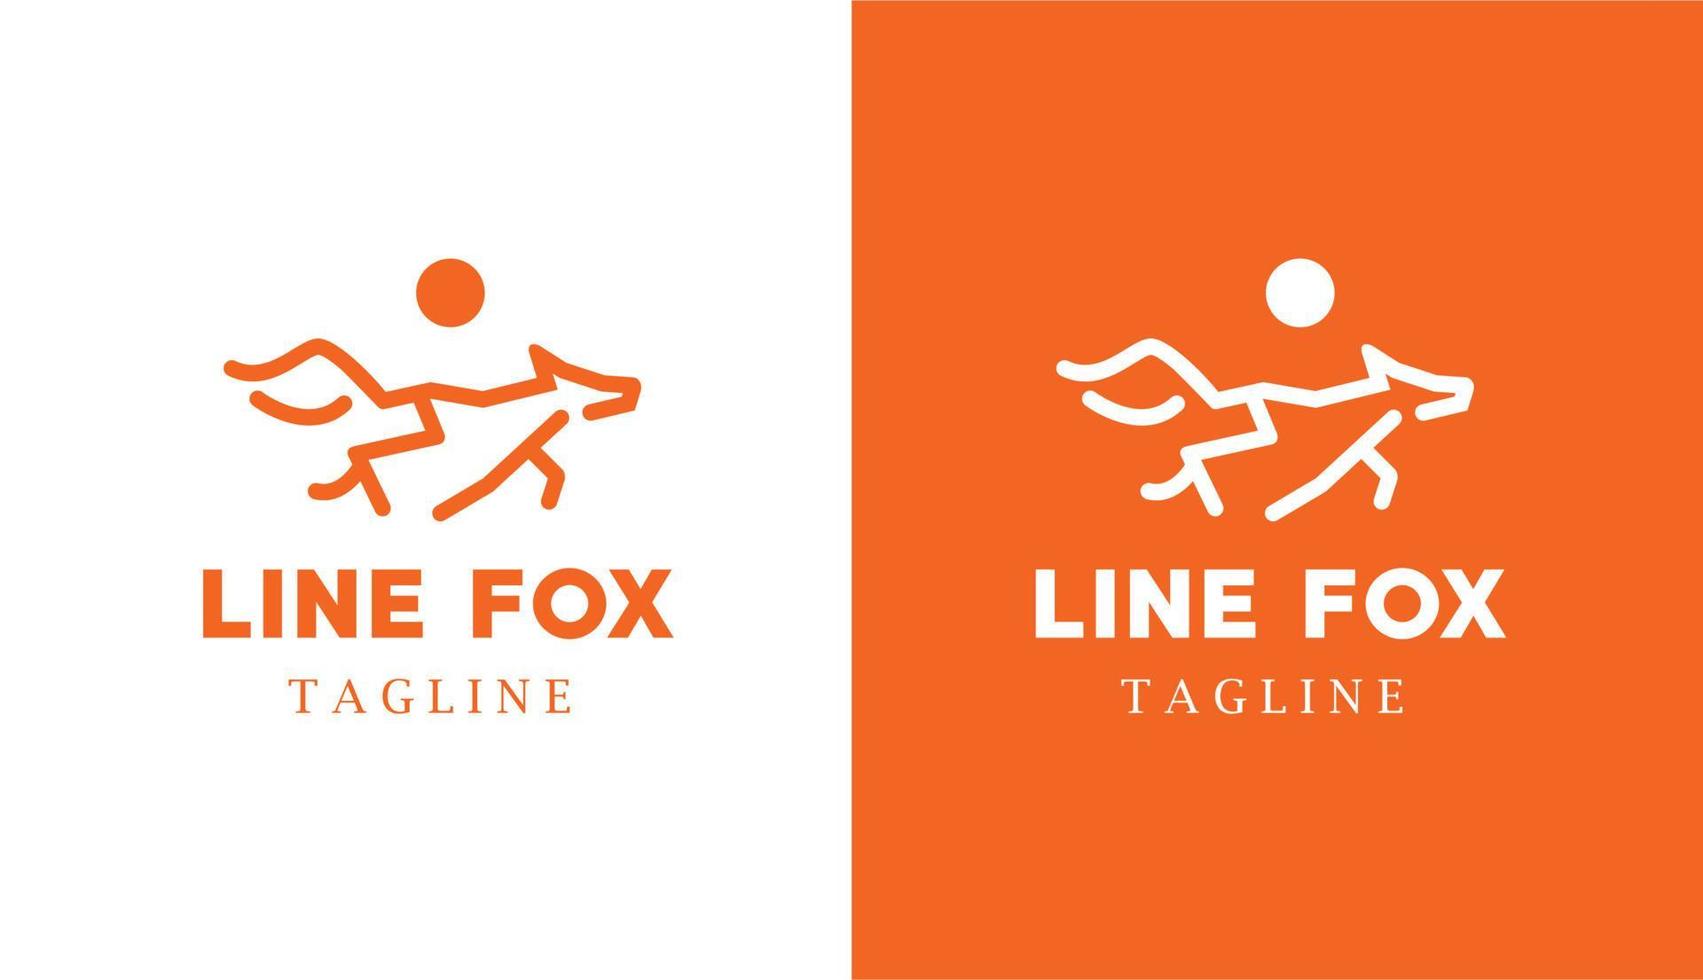 monoline de lobo minimalista simple, logotipo geométrico de fox line art naranja perfecto para cualquier marca vector